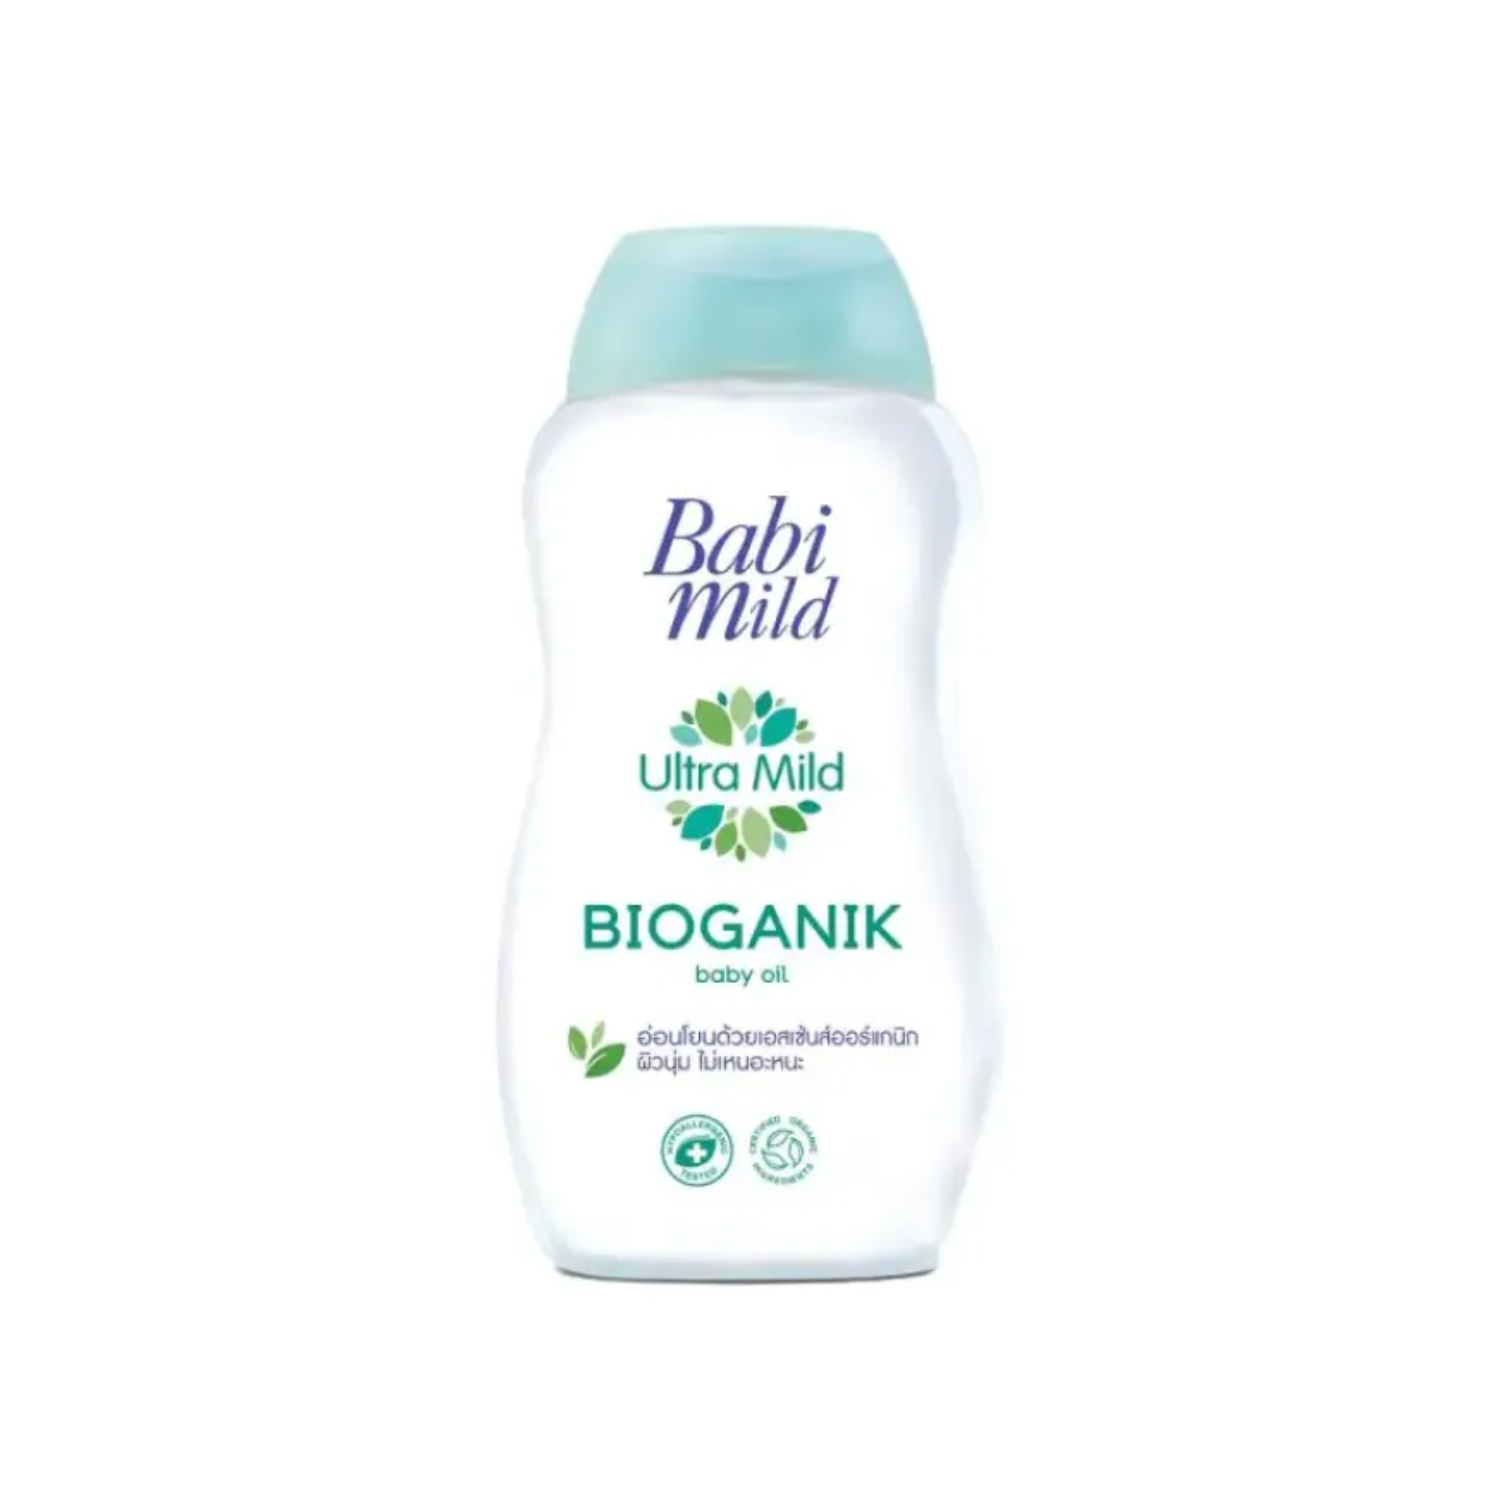 babi-mild-ultra-mild-bioganik-baby-oil-100ml